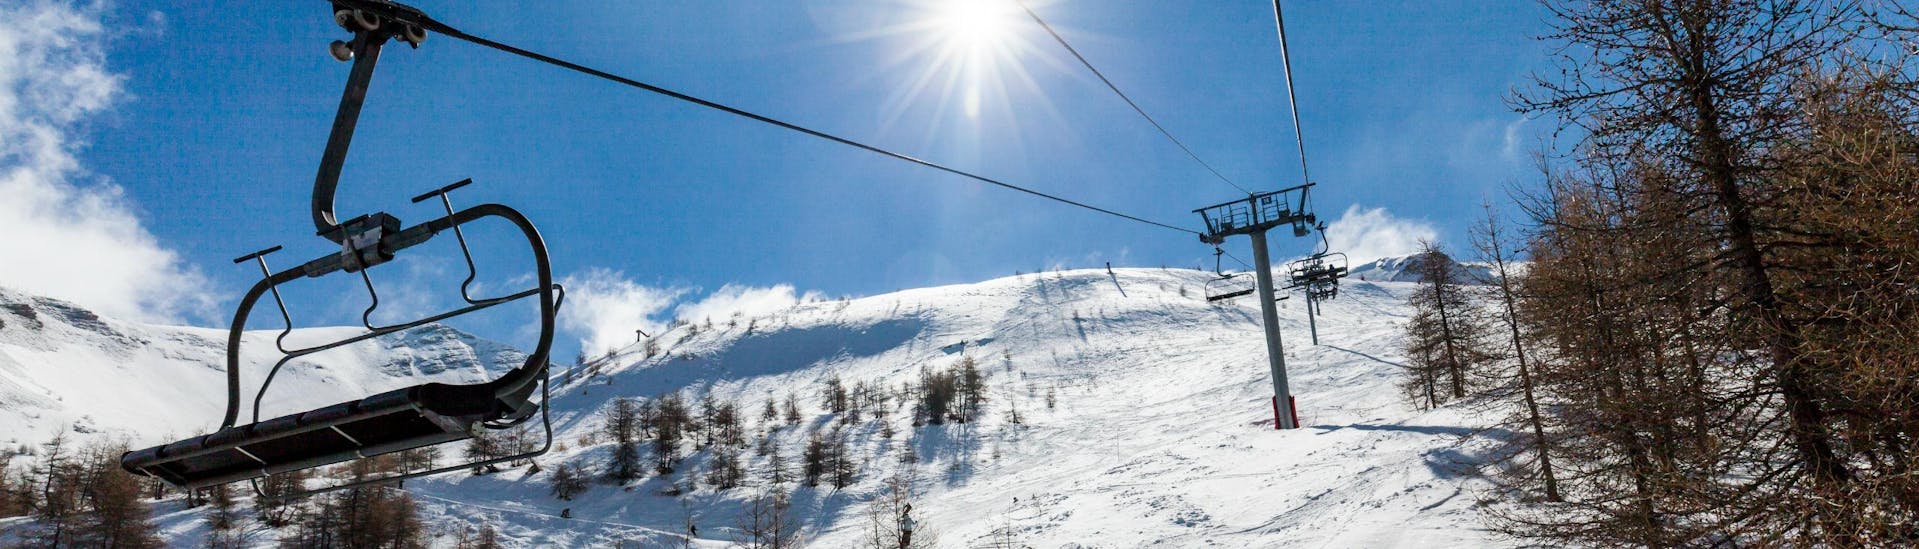 Un télésiège rejoint le sommet d'une montagne aux Orres, tandis qu'un groupe de skieurs participant à une série de cours de ski organisés par l'une des écoles de ski locales dévale la pente en contrebas.